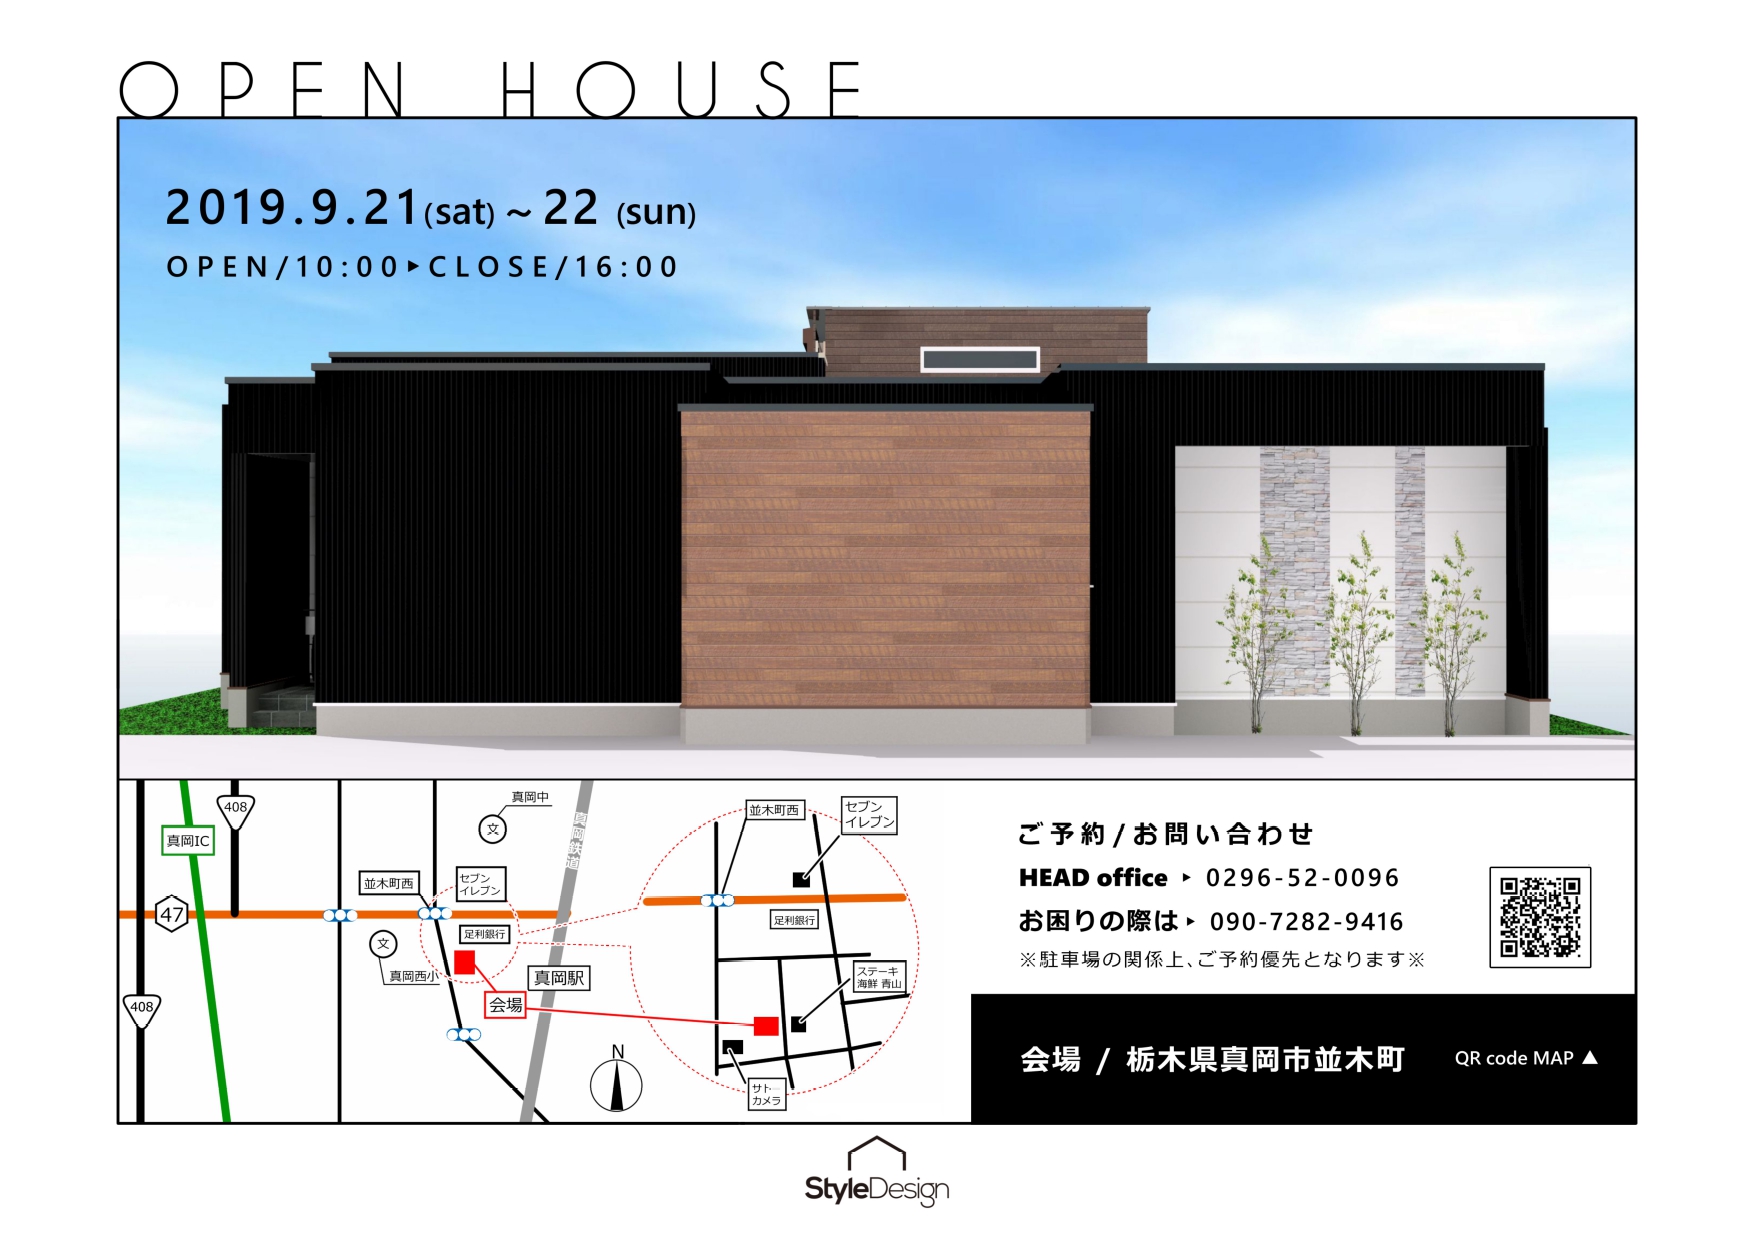 OPEN HOUSE「40坪超の大きな平屋住宅」in 栃木県真岡市並木町